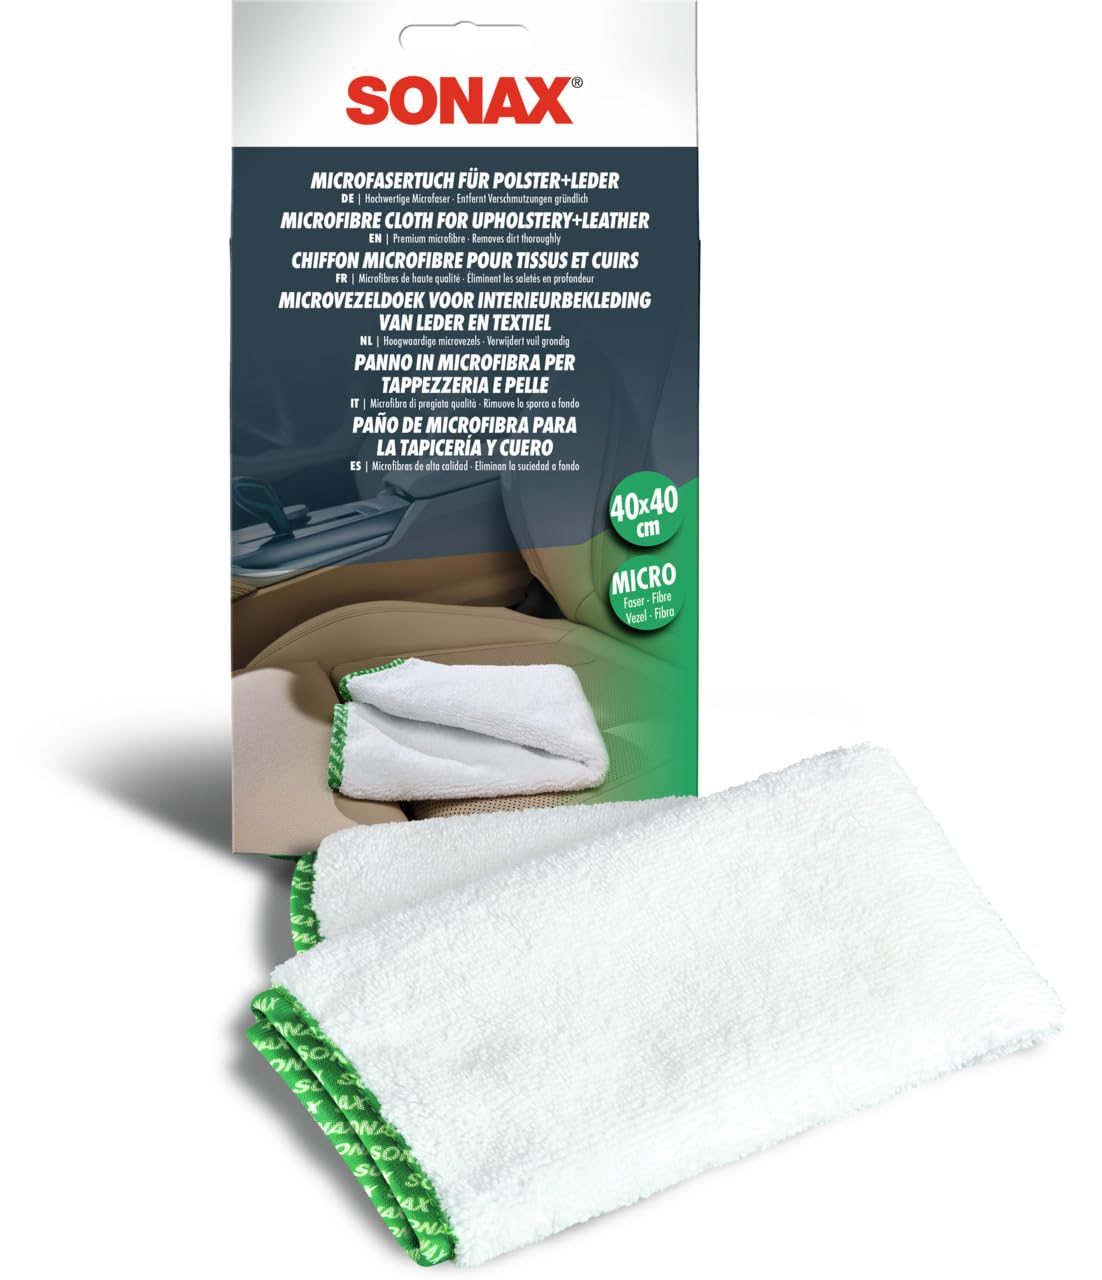 SONAX MicrofaserTuch für Polster+Leder (1 Stück) zur fusselfreien Fahrzeuginnenreinigung von Polster-, Textil- und Lederoberflächen | Art-Nr. 04168000 von SONAX